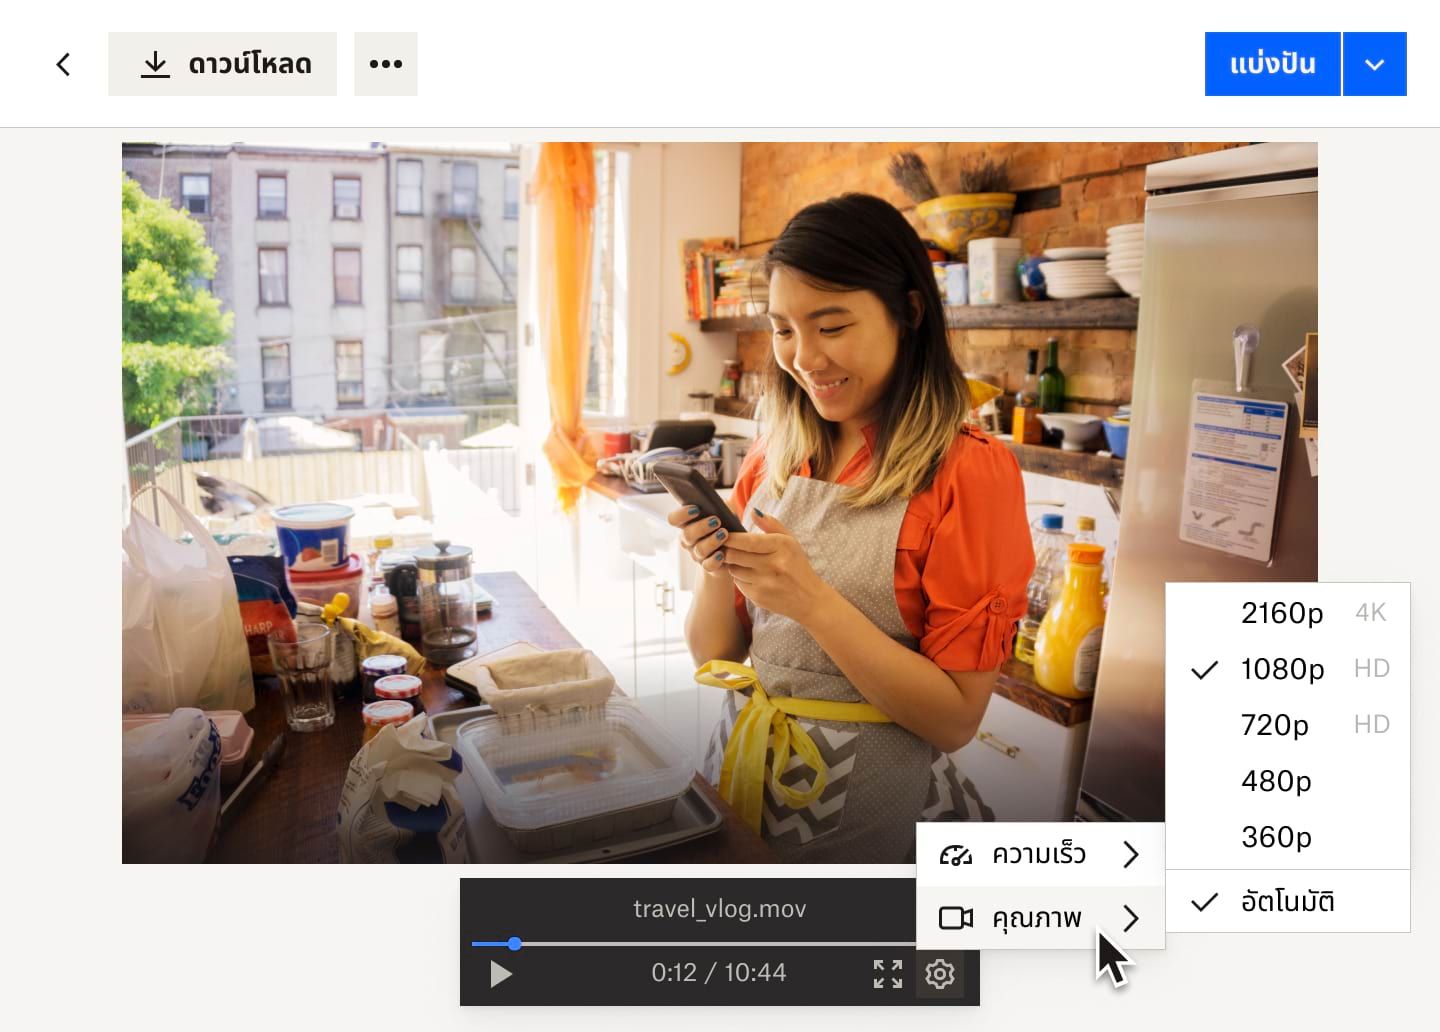 เมนูดรอปดาวน์จากปุ่มการตั้งค่าแสดงตัวเลือกความเร็วและคุณภาพวิดีโอสำหรับไฟล์วิดีโอใน Dropbox ซึ่งเป็นผู้หญิงที่กำลังทำงานอยู่ในร้านเบเกอรี่